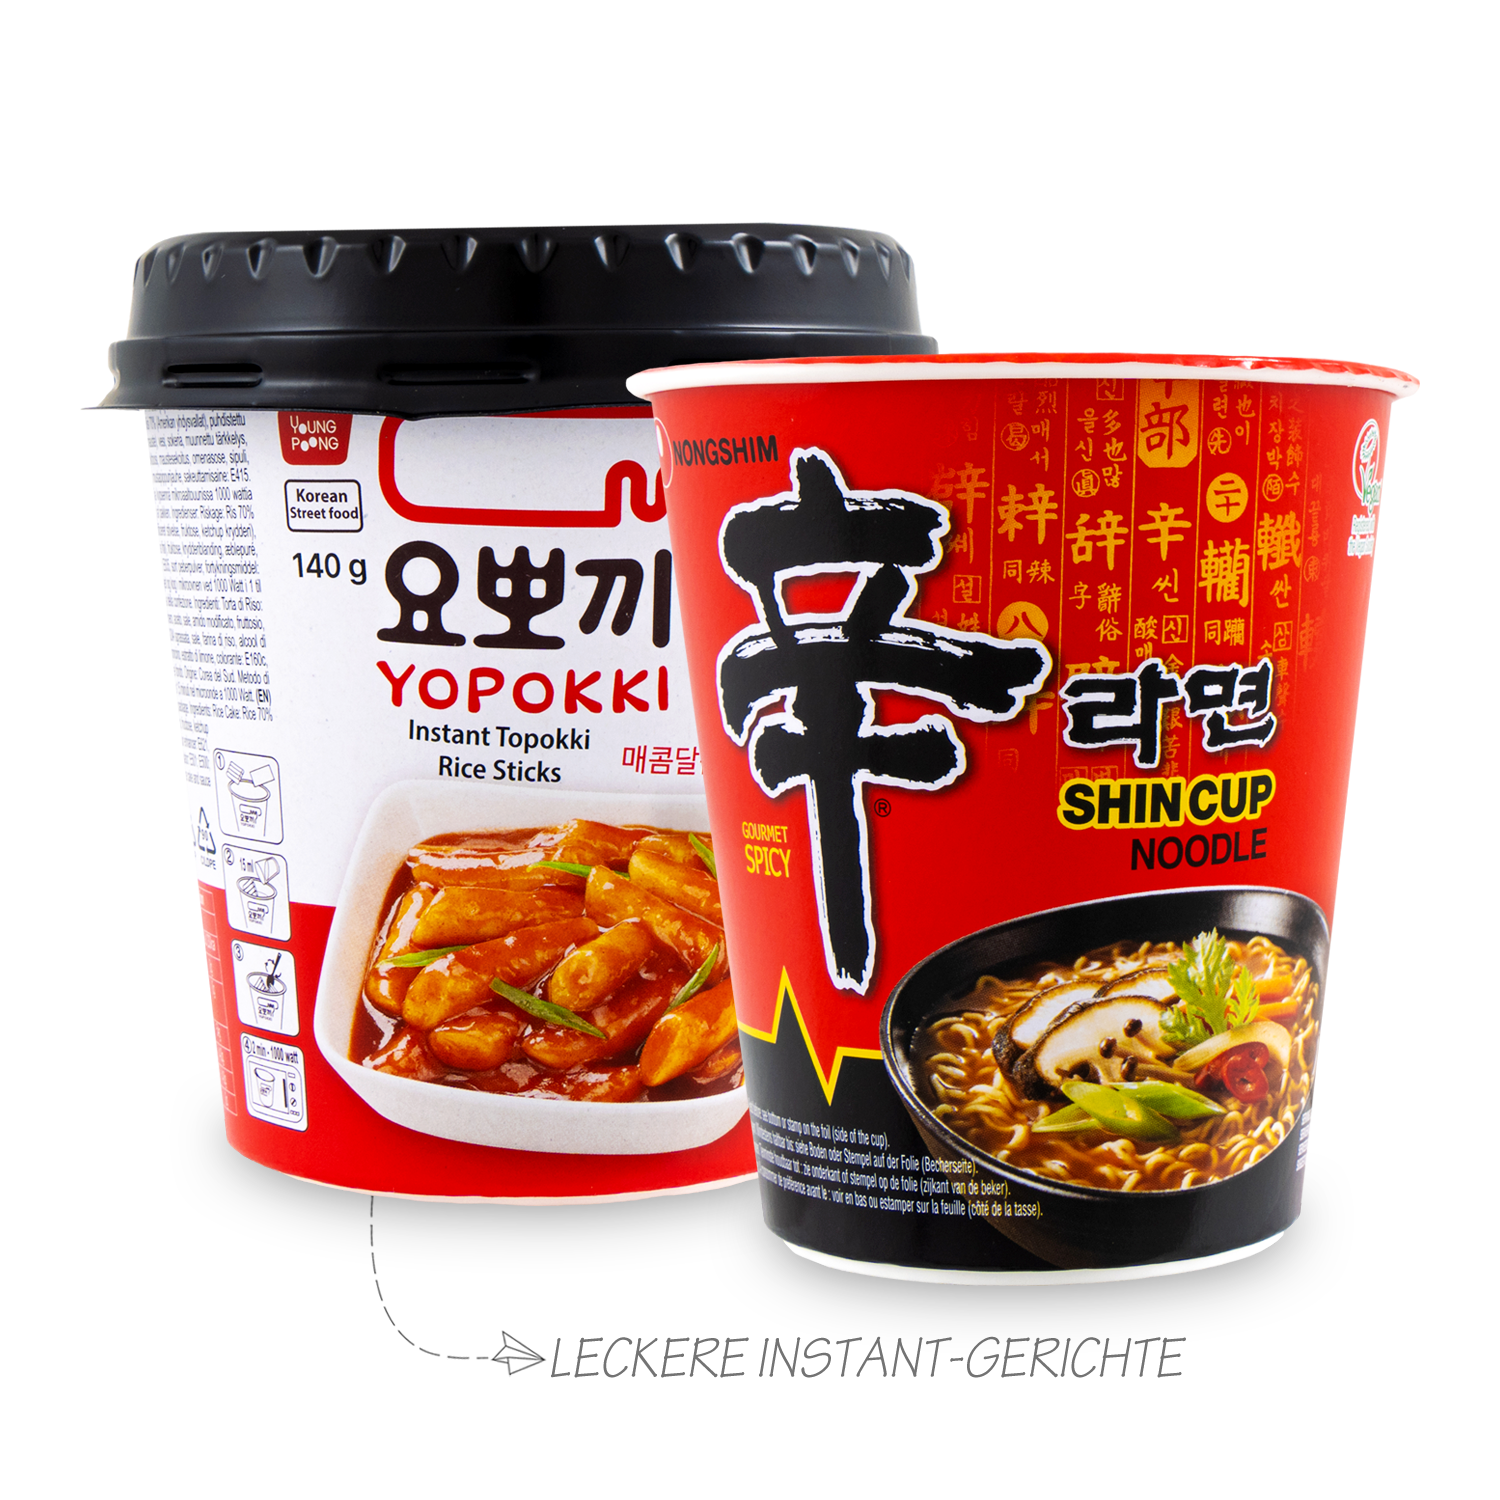 Korea Convenience Store Erlebnis-Box: Überraschungsbox mit koreanischen Supermarkt-Artikeln